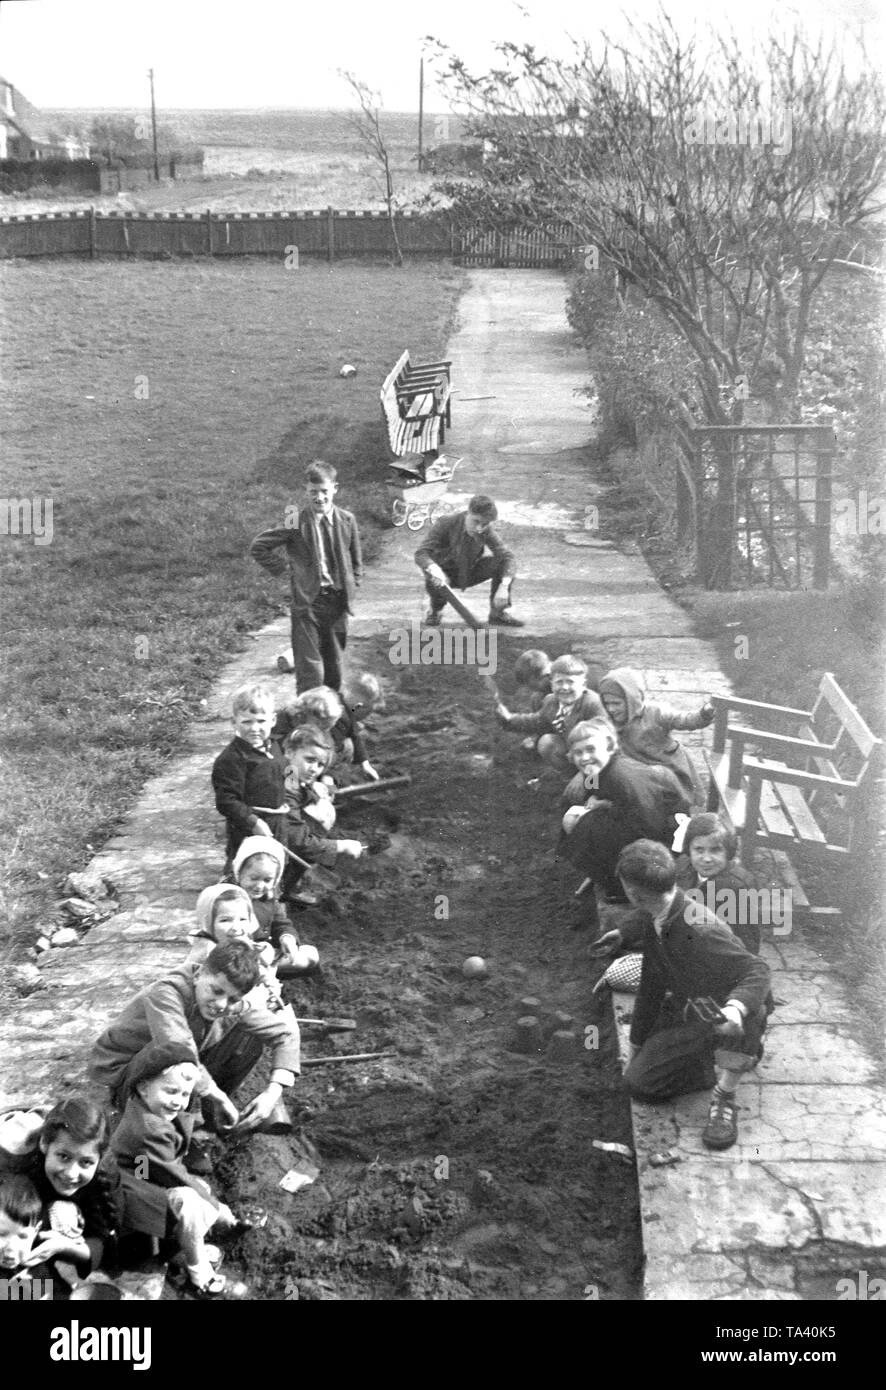 Kinder im Waisenhaus in Peacehaven Gracie Fields, Sussex rund um den Anfang der 1950er Jahre spielen in den neu gemachten Sandkasten Stockfoto